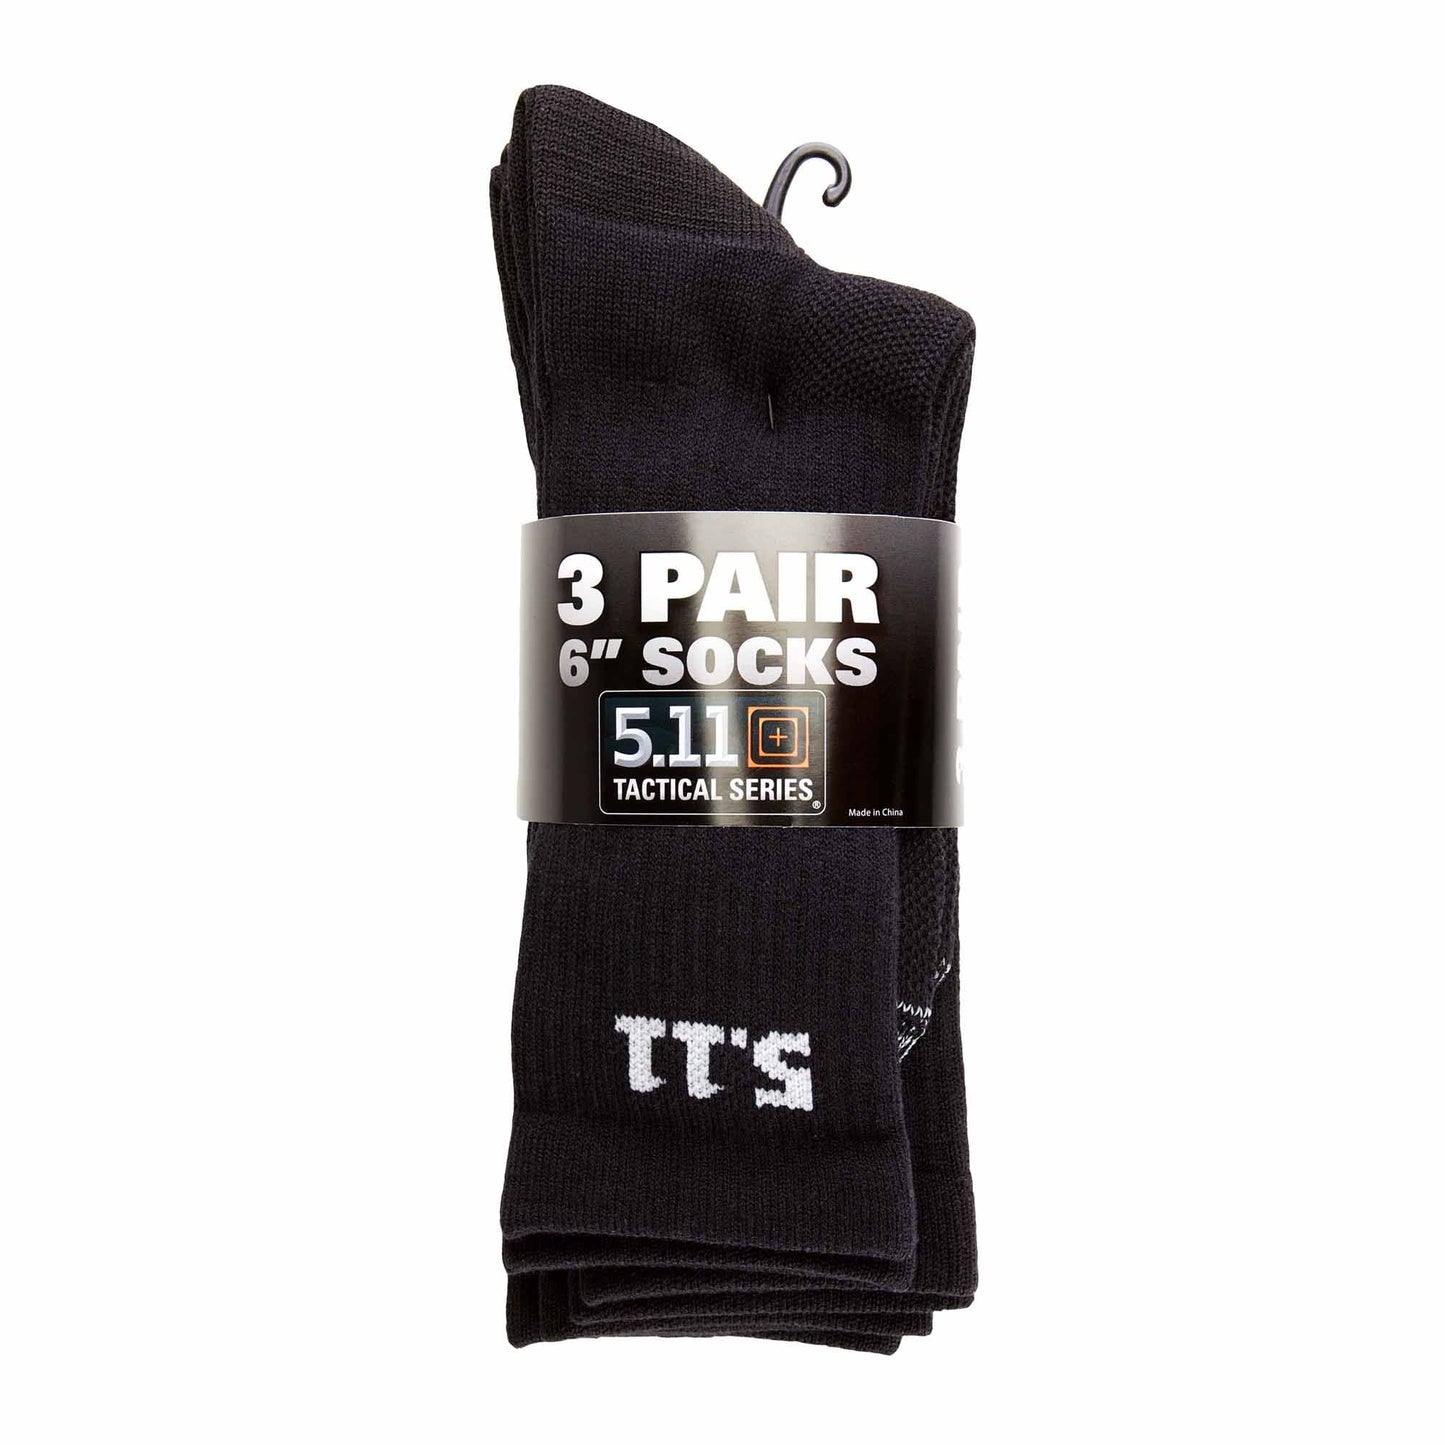 5.11 Tactical 6 Inch Socks Black Pack of 3 Tactical Distributors Ltd New Zealand